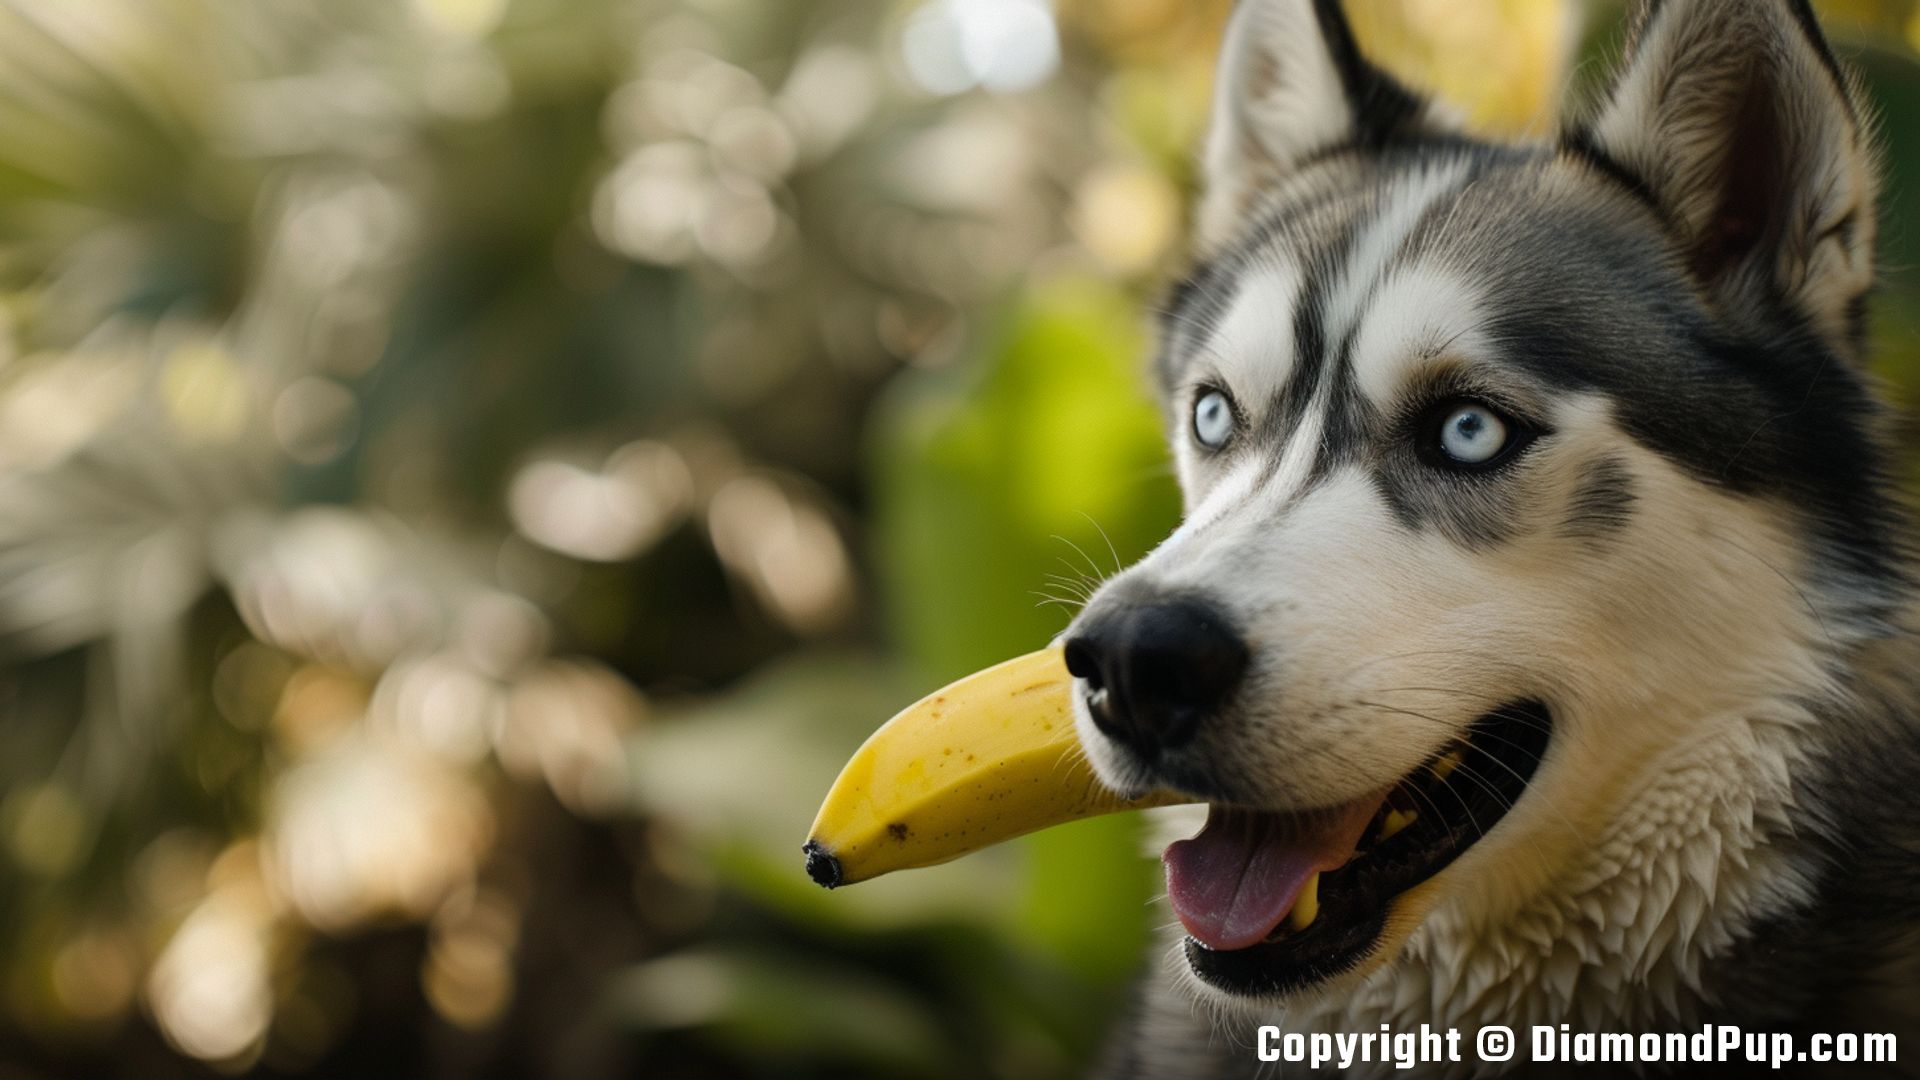 Photo of a Playful Husky Eating Banana